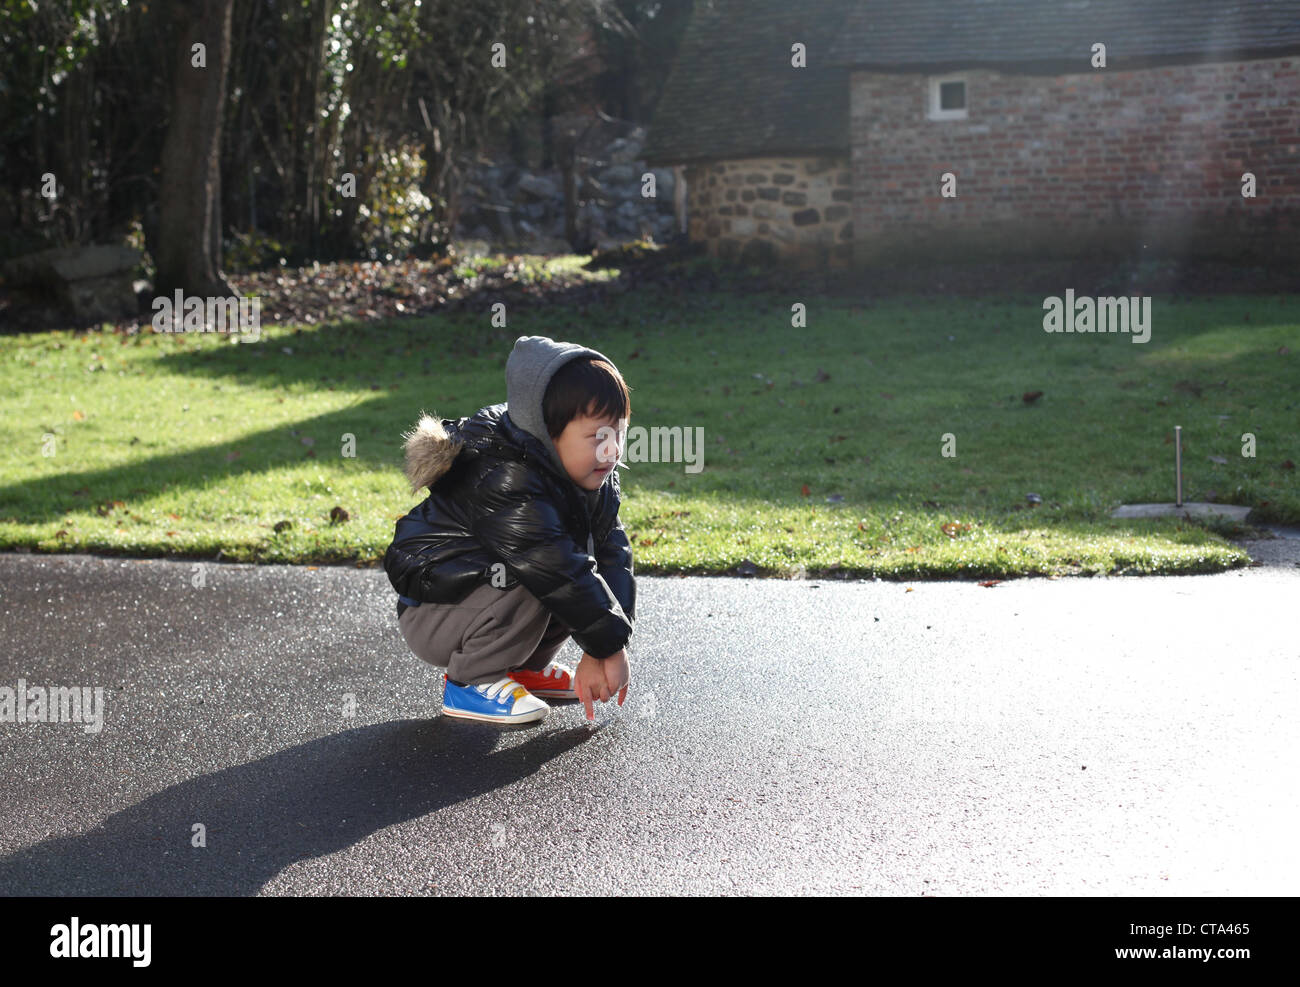 C'est une photo d'un petit garçon de 3 ans ou 4 ans qui est juste s'accroupir sur une route ou la cour dans une ferme de Normandie, France Banque D'Images